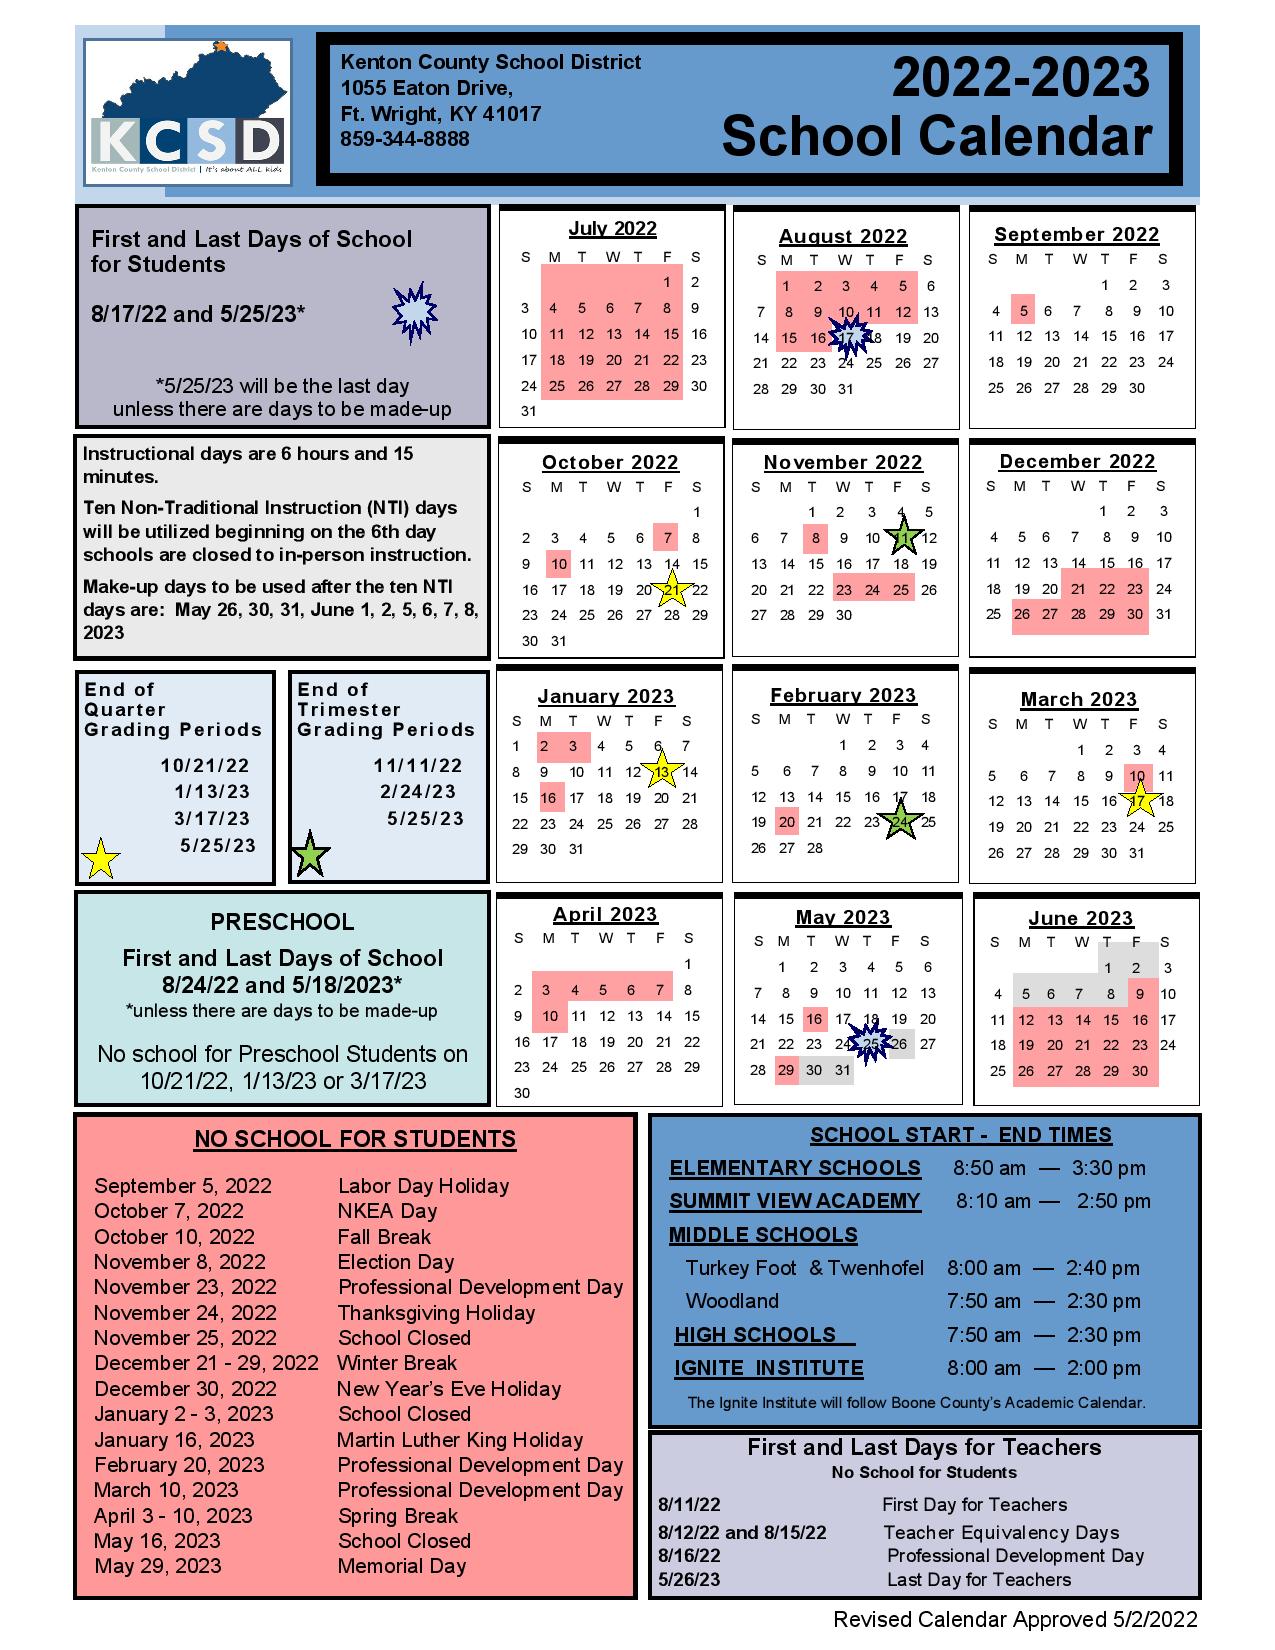 kenton-county-schools-calendar-2022-2023